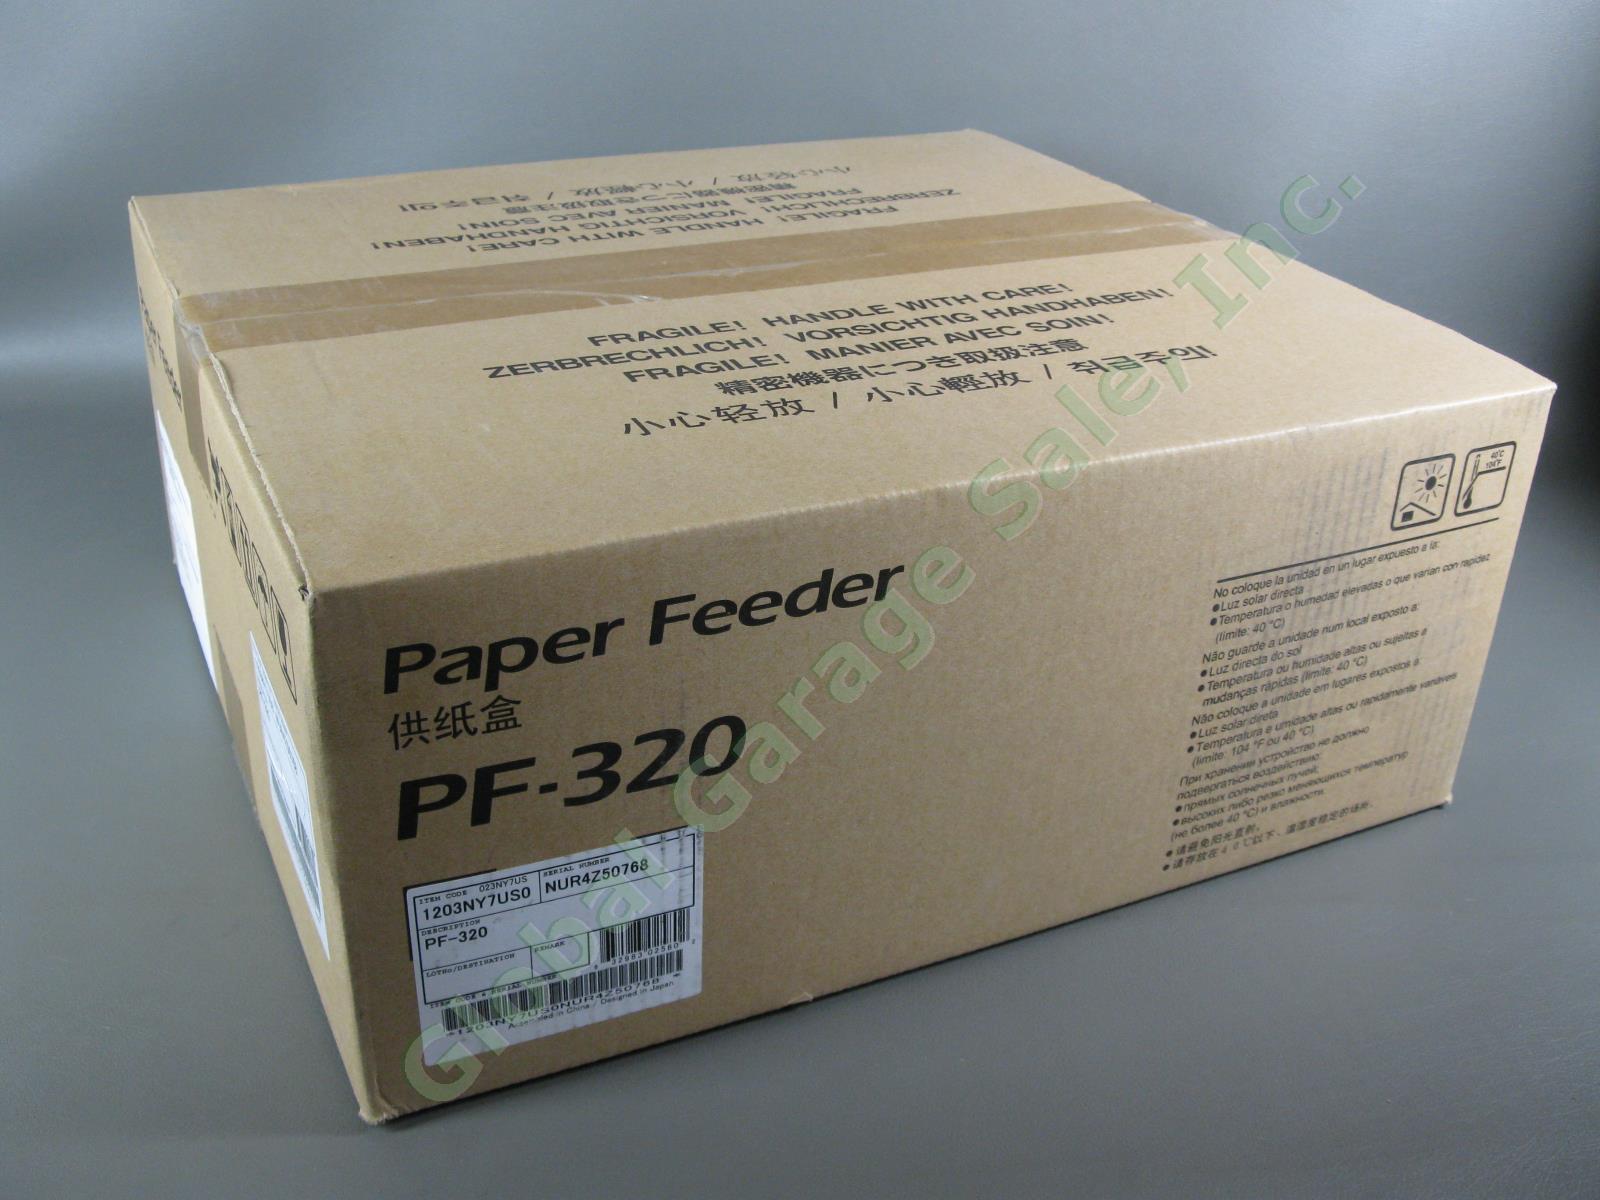 7 Kyocera PF-320 1203NY7US0 Media Tray 500 Sheet Paper Feeder FS-2100 4100 4200